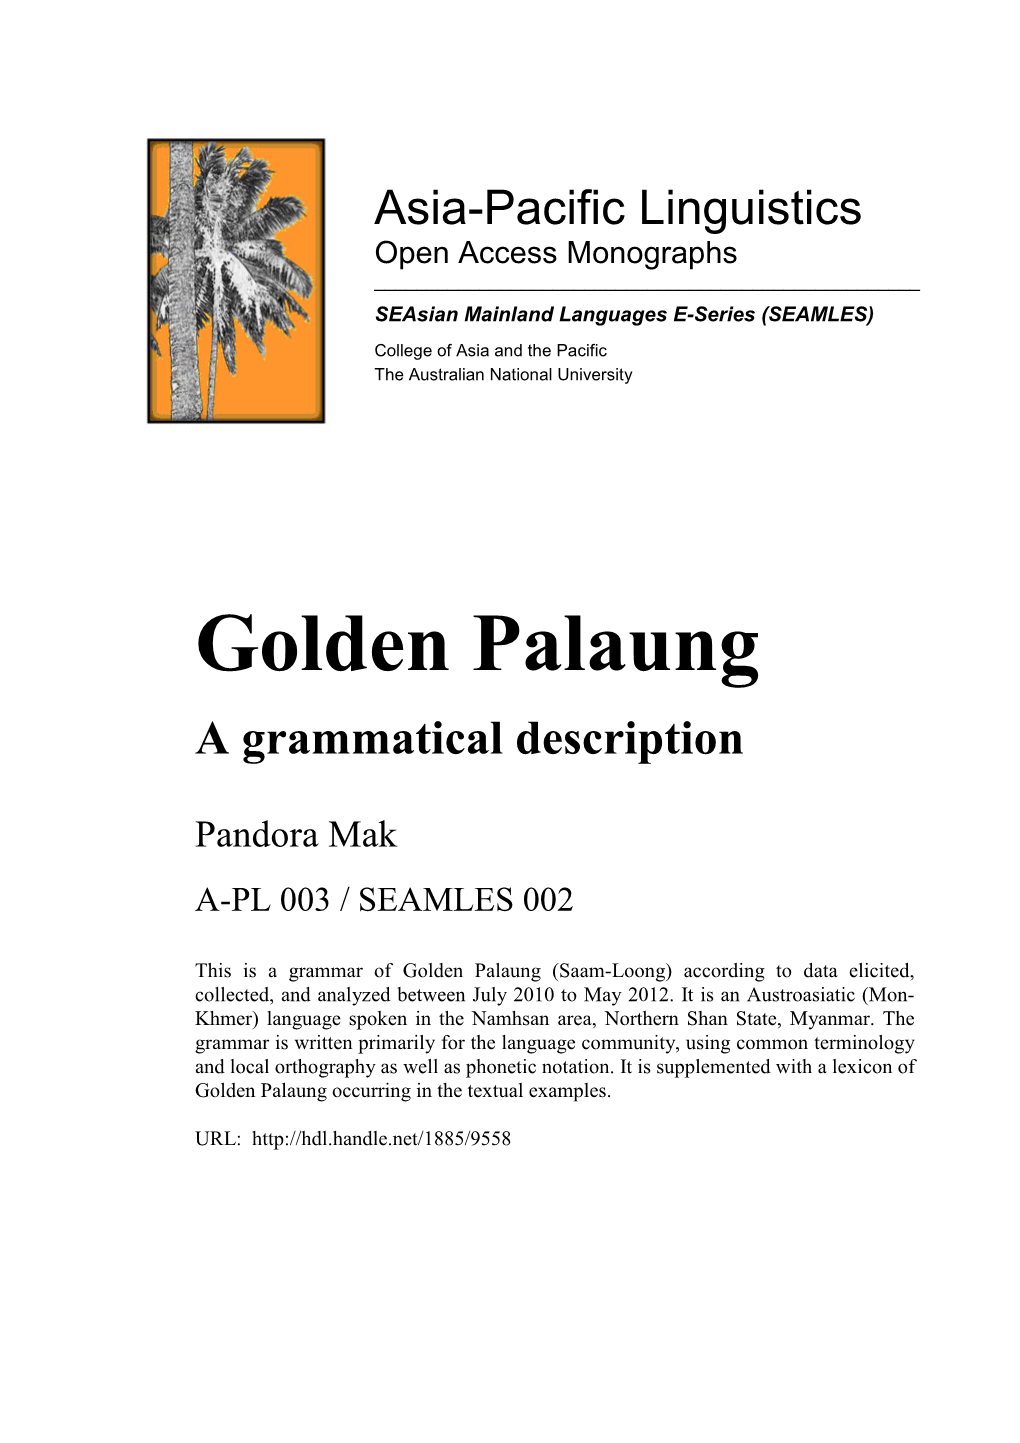 Golden Palaung